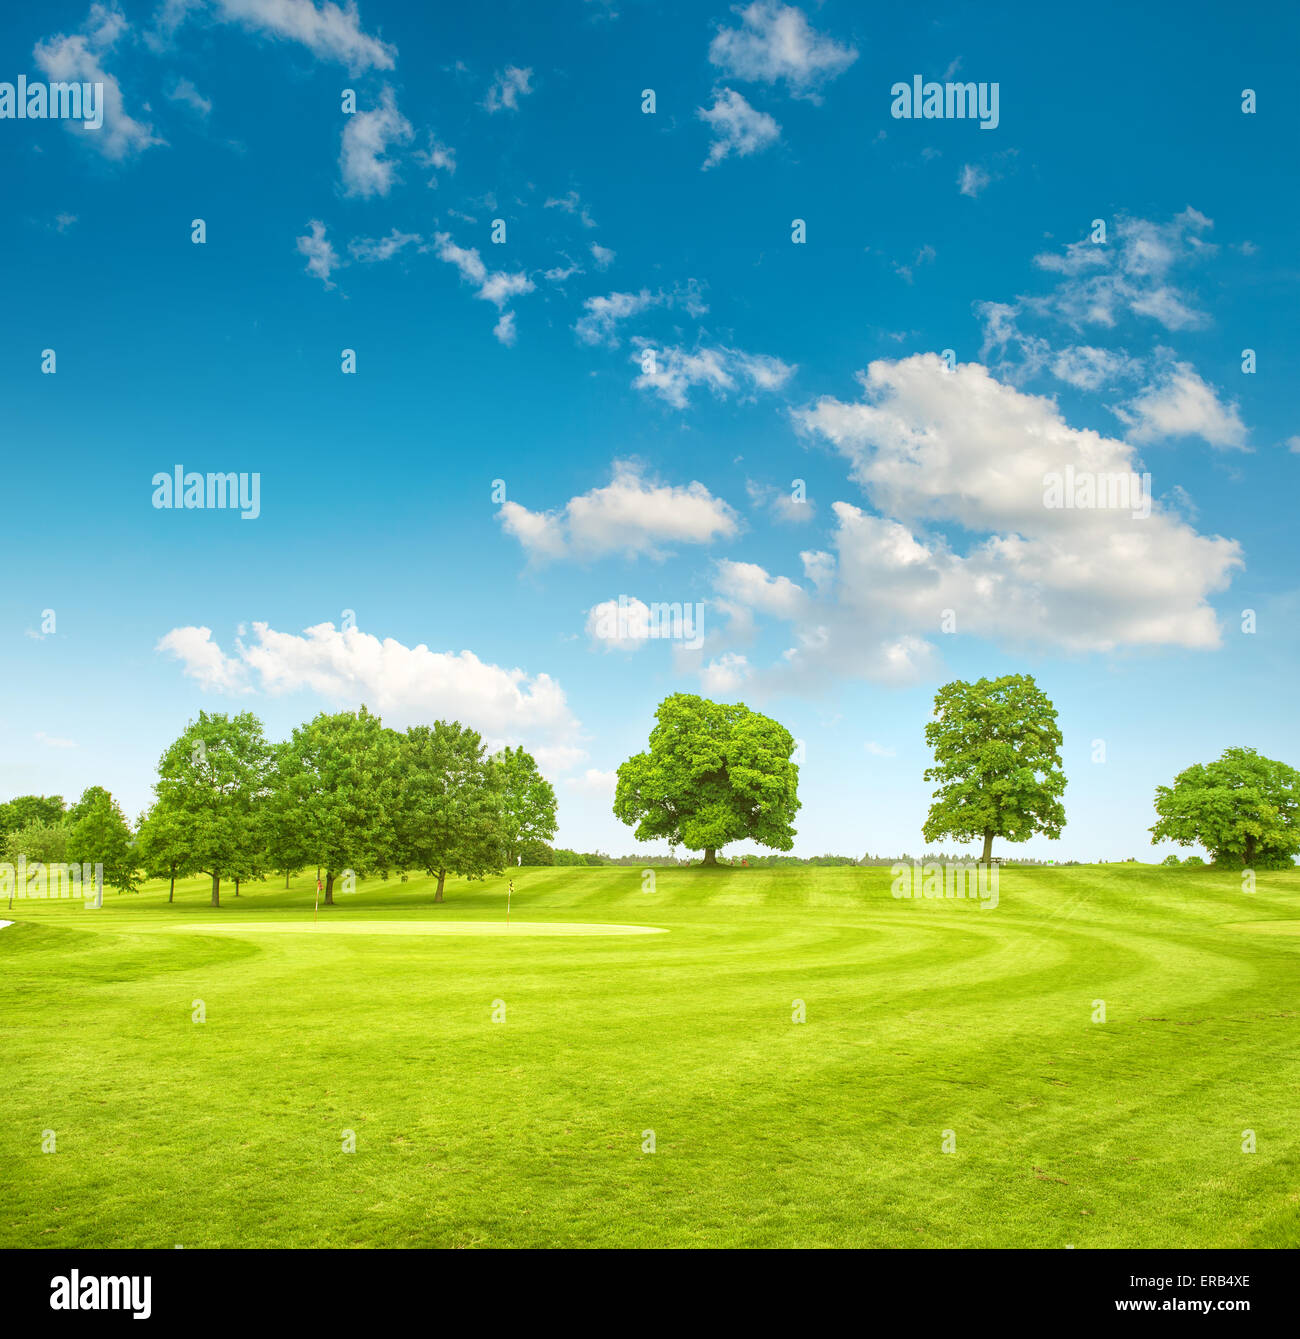 Le parcours de golf. Champ de printemps avec de l'herbe bien verte, arbres et ciel nuageux ciel bleu Banque D'Images